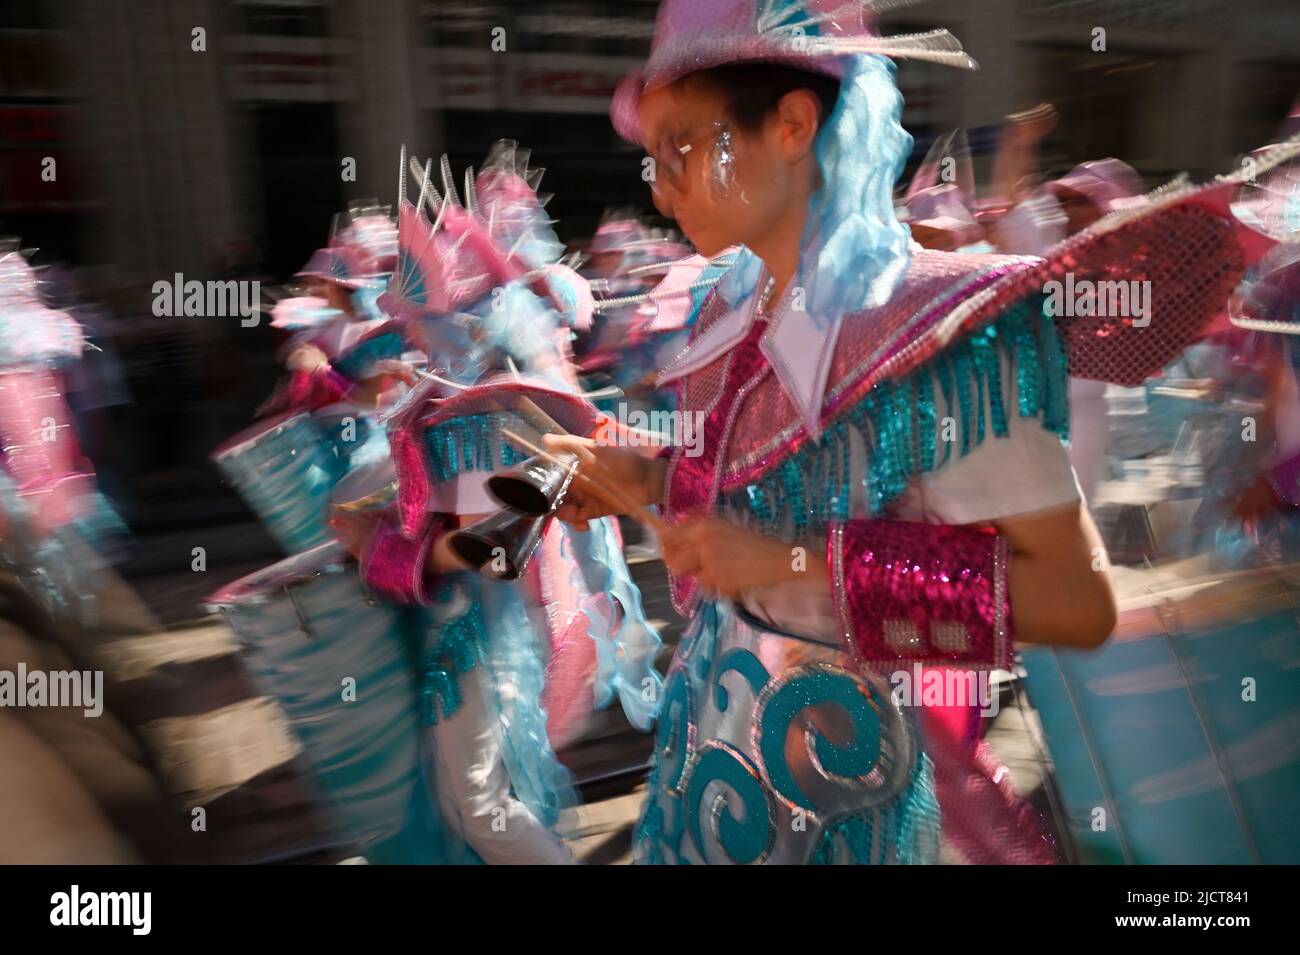 Helsinki, Finnland – 11. Juni 2022: Traditioneller Sommer Samba-Karneval in Helsinki. Die Veranstaltung umfasst Tanz, Musik, Workshops, Performances und brasilianische Kultur! Die Veranstaltung findet seit 1991 statt und in diesem Jahr wird die Zahl der Zuschauer auf 50.000 steigen! Stockfoto